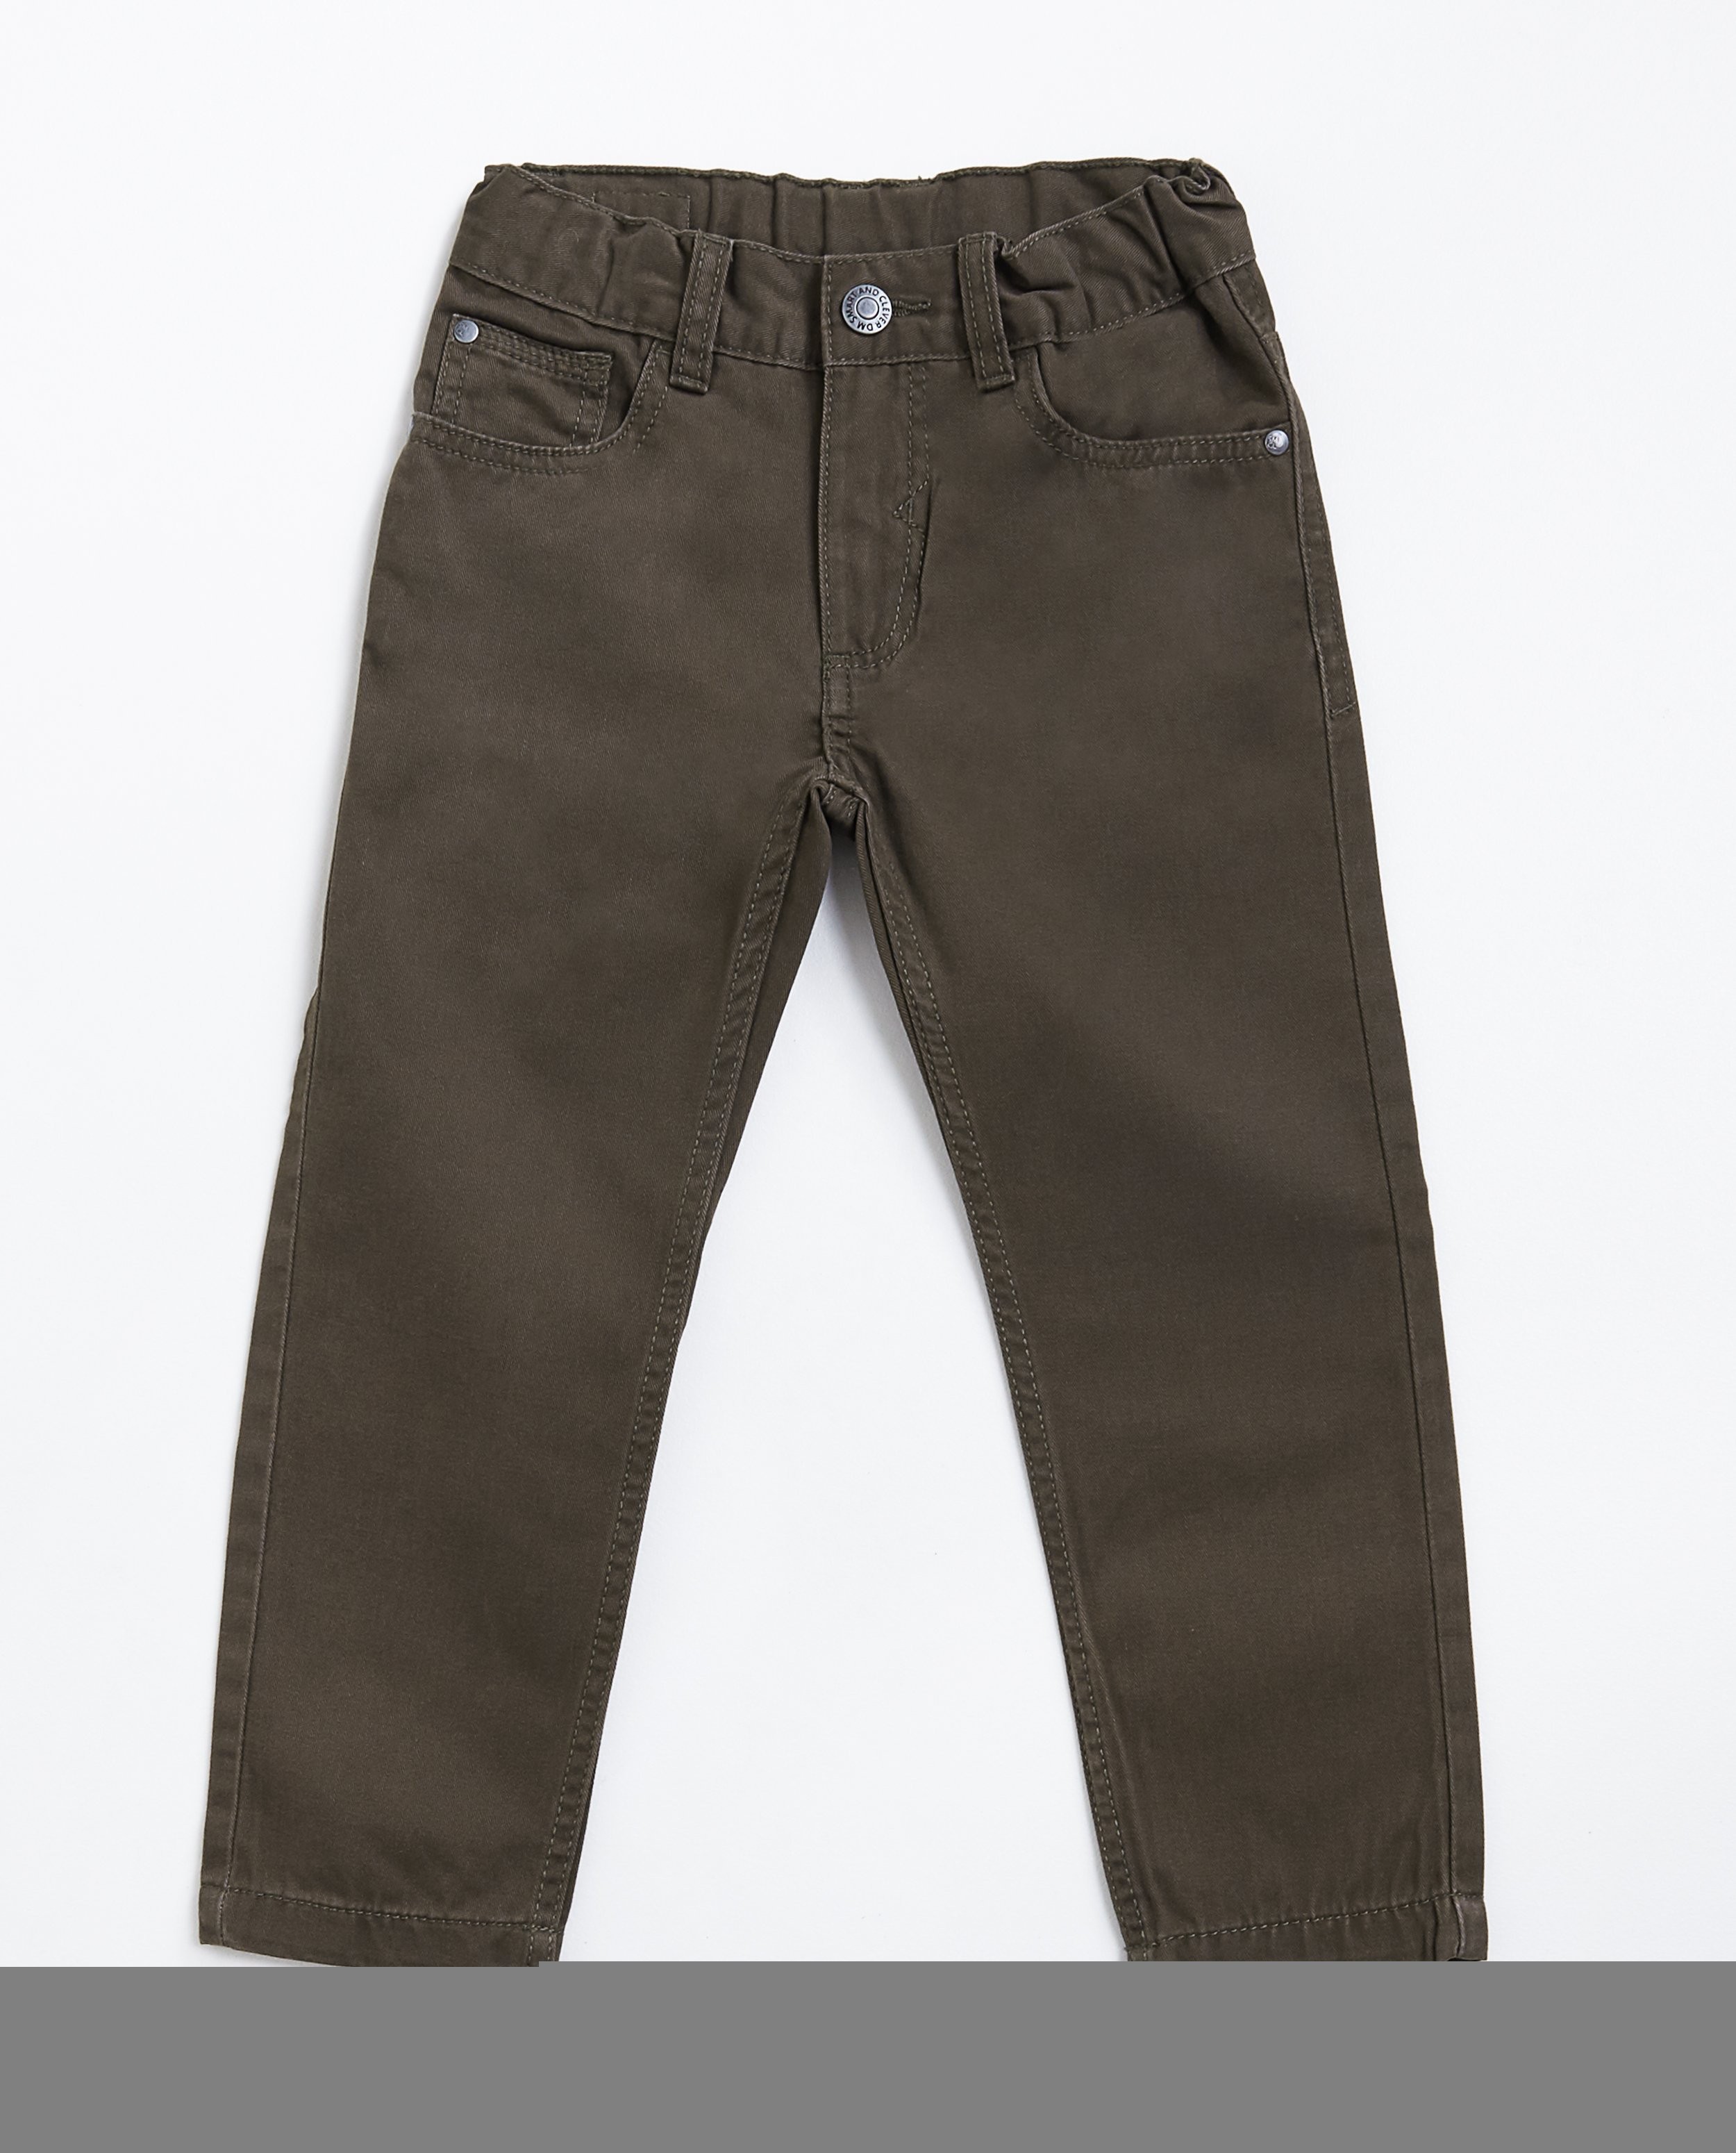 Pantalons - Katoenen broek met rechte pijpen